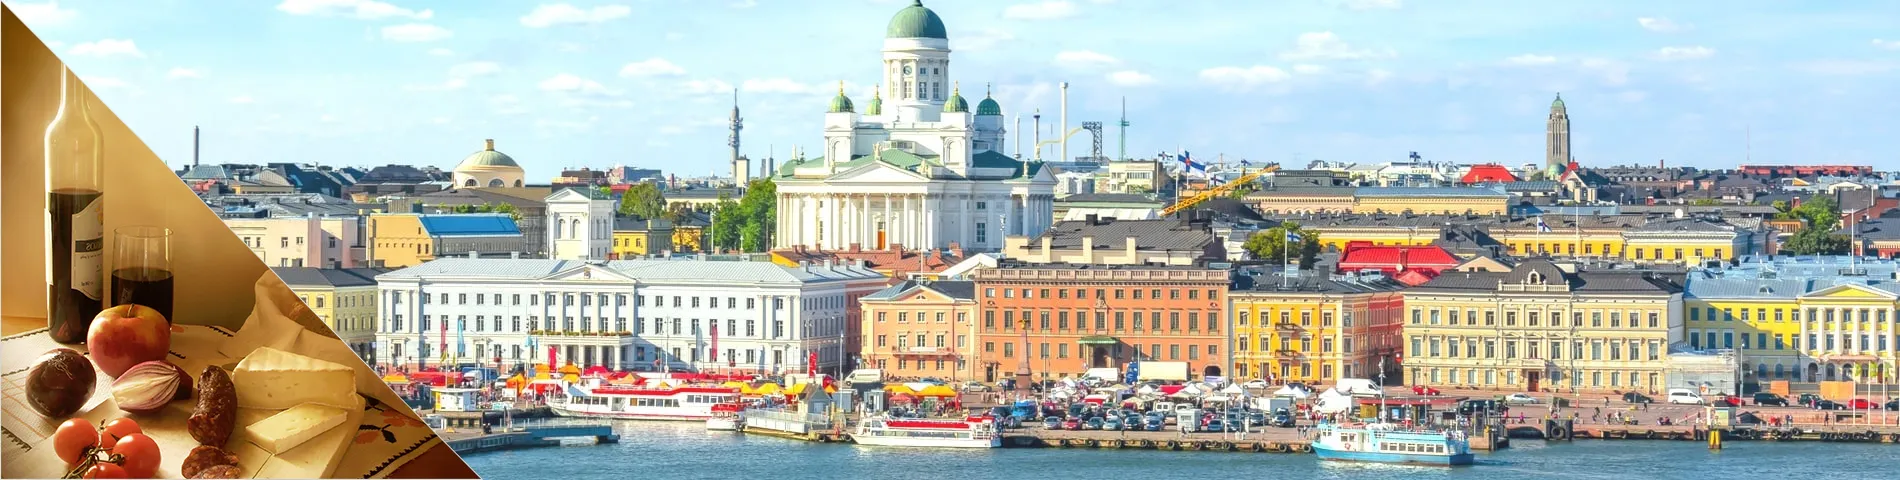 Helsinki - Suomi & kulttuuri